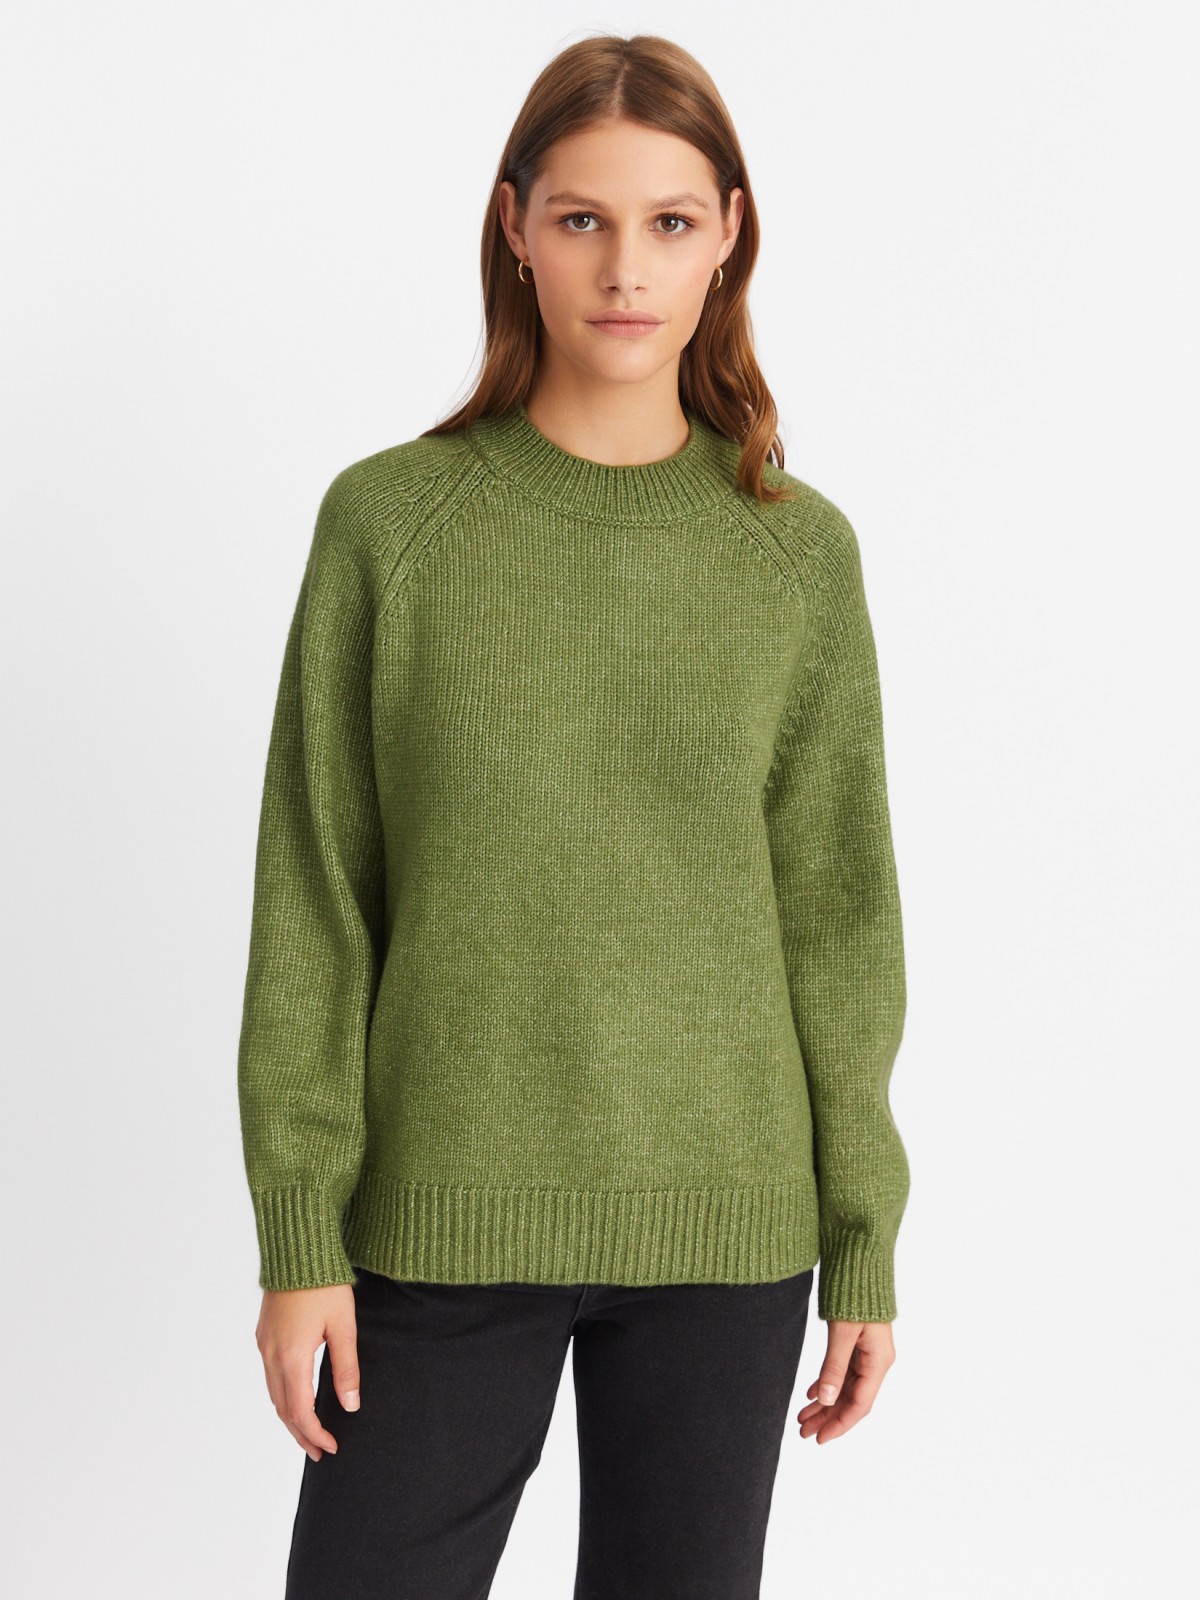 Вязаный свитер с воротником-стойкой zolla цвета хаки